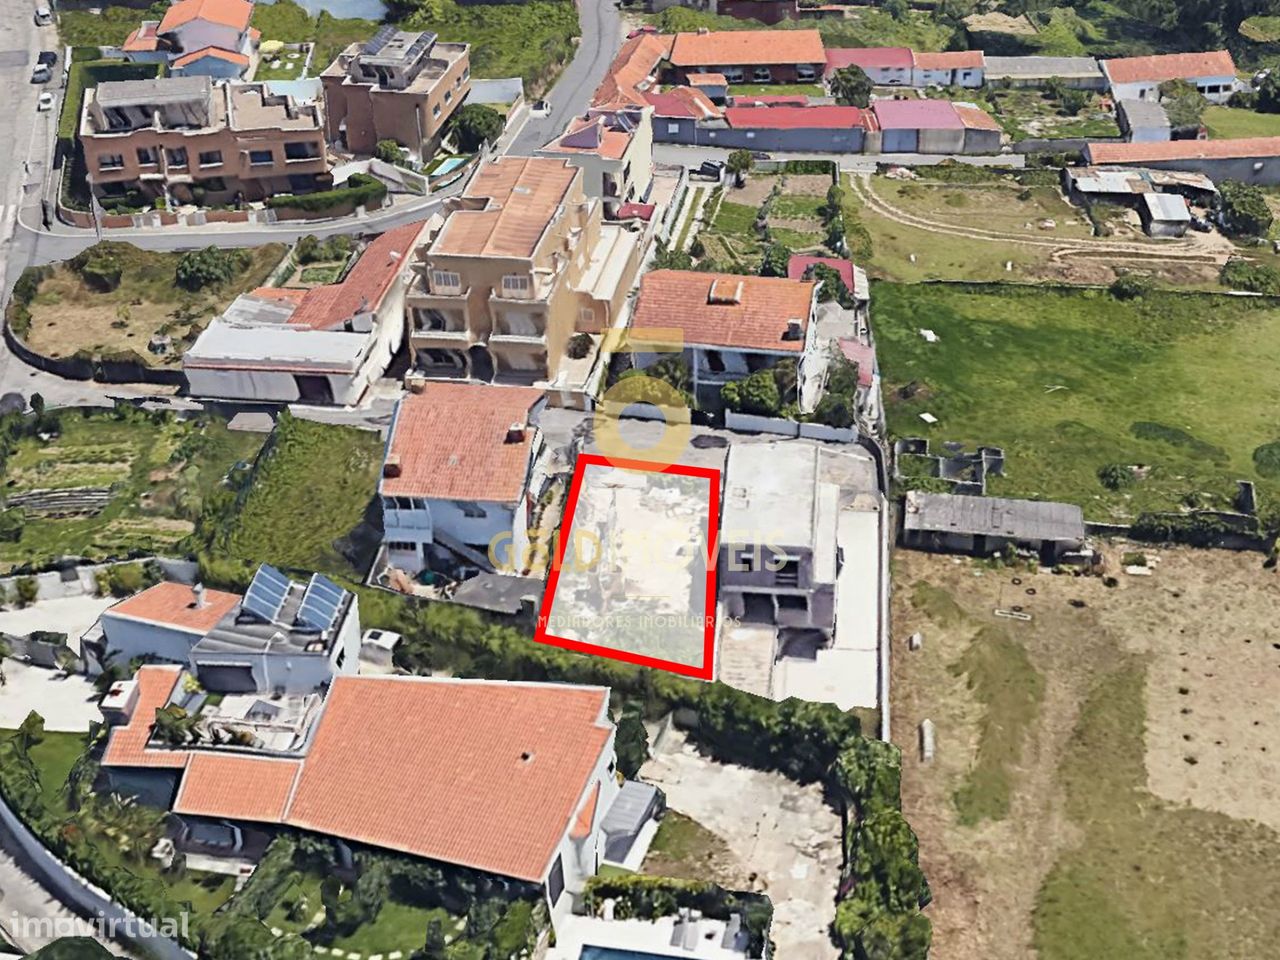 Terreno Para Construção  Venda em Canidelo,Vila Nova de Gaia